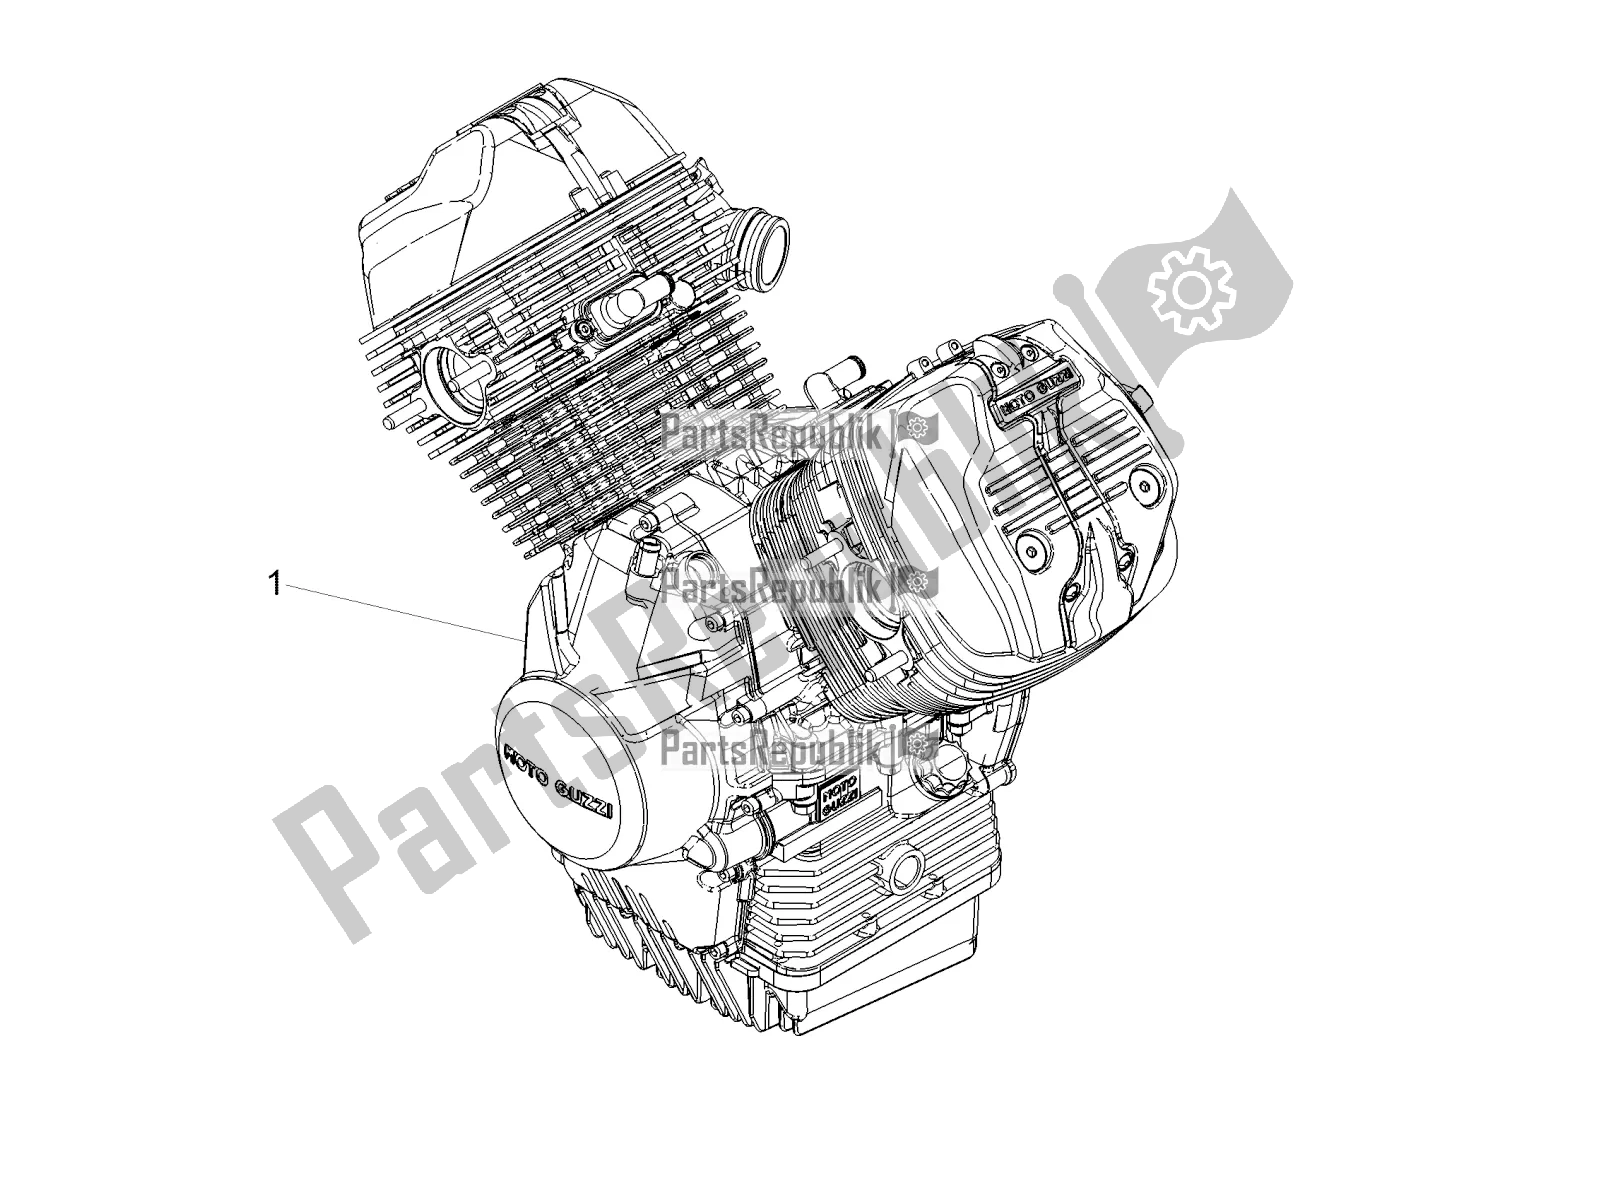 Tutte le parti per il Leva Parziale Per Il Completamento Del Motore del Moto-Guzzi V7 III Racer 10 TH Anniversary USA 750 2020